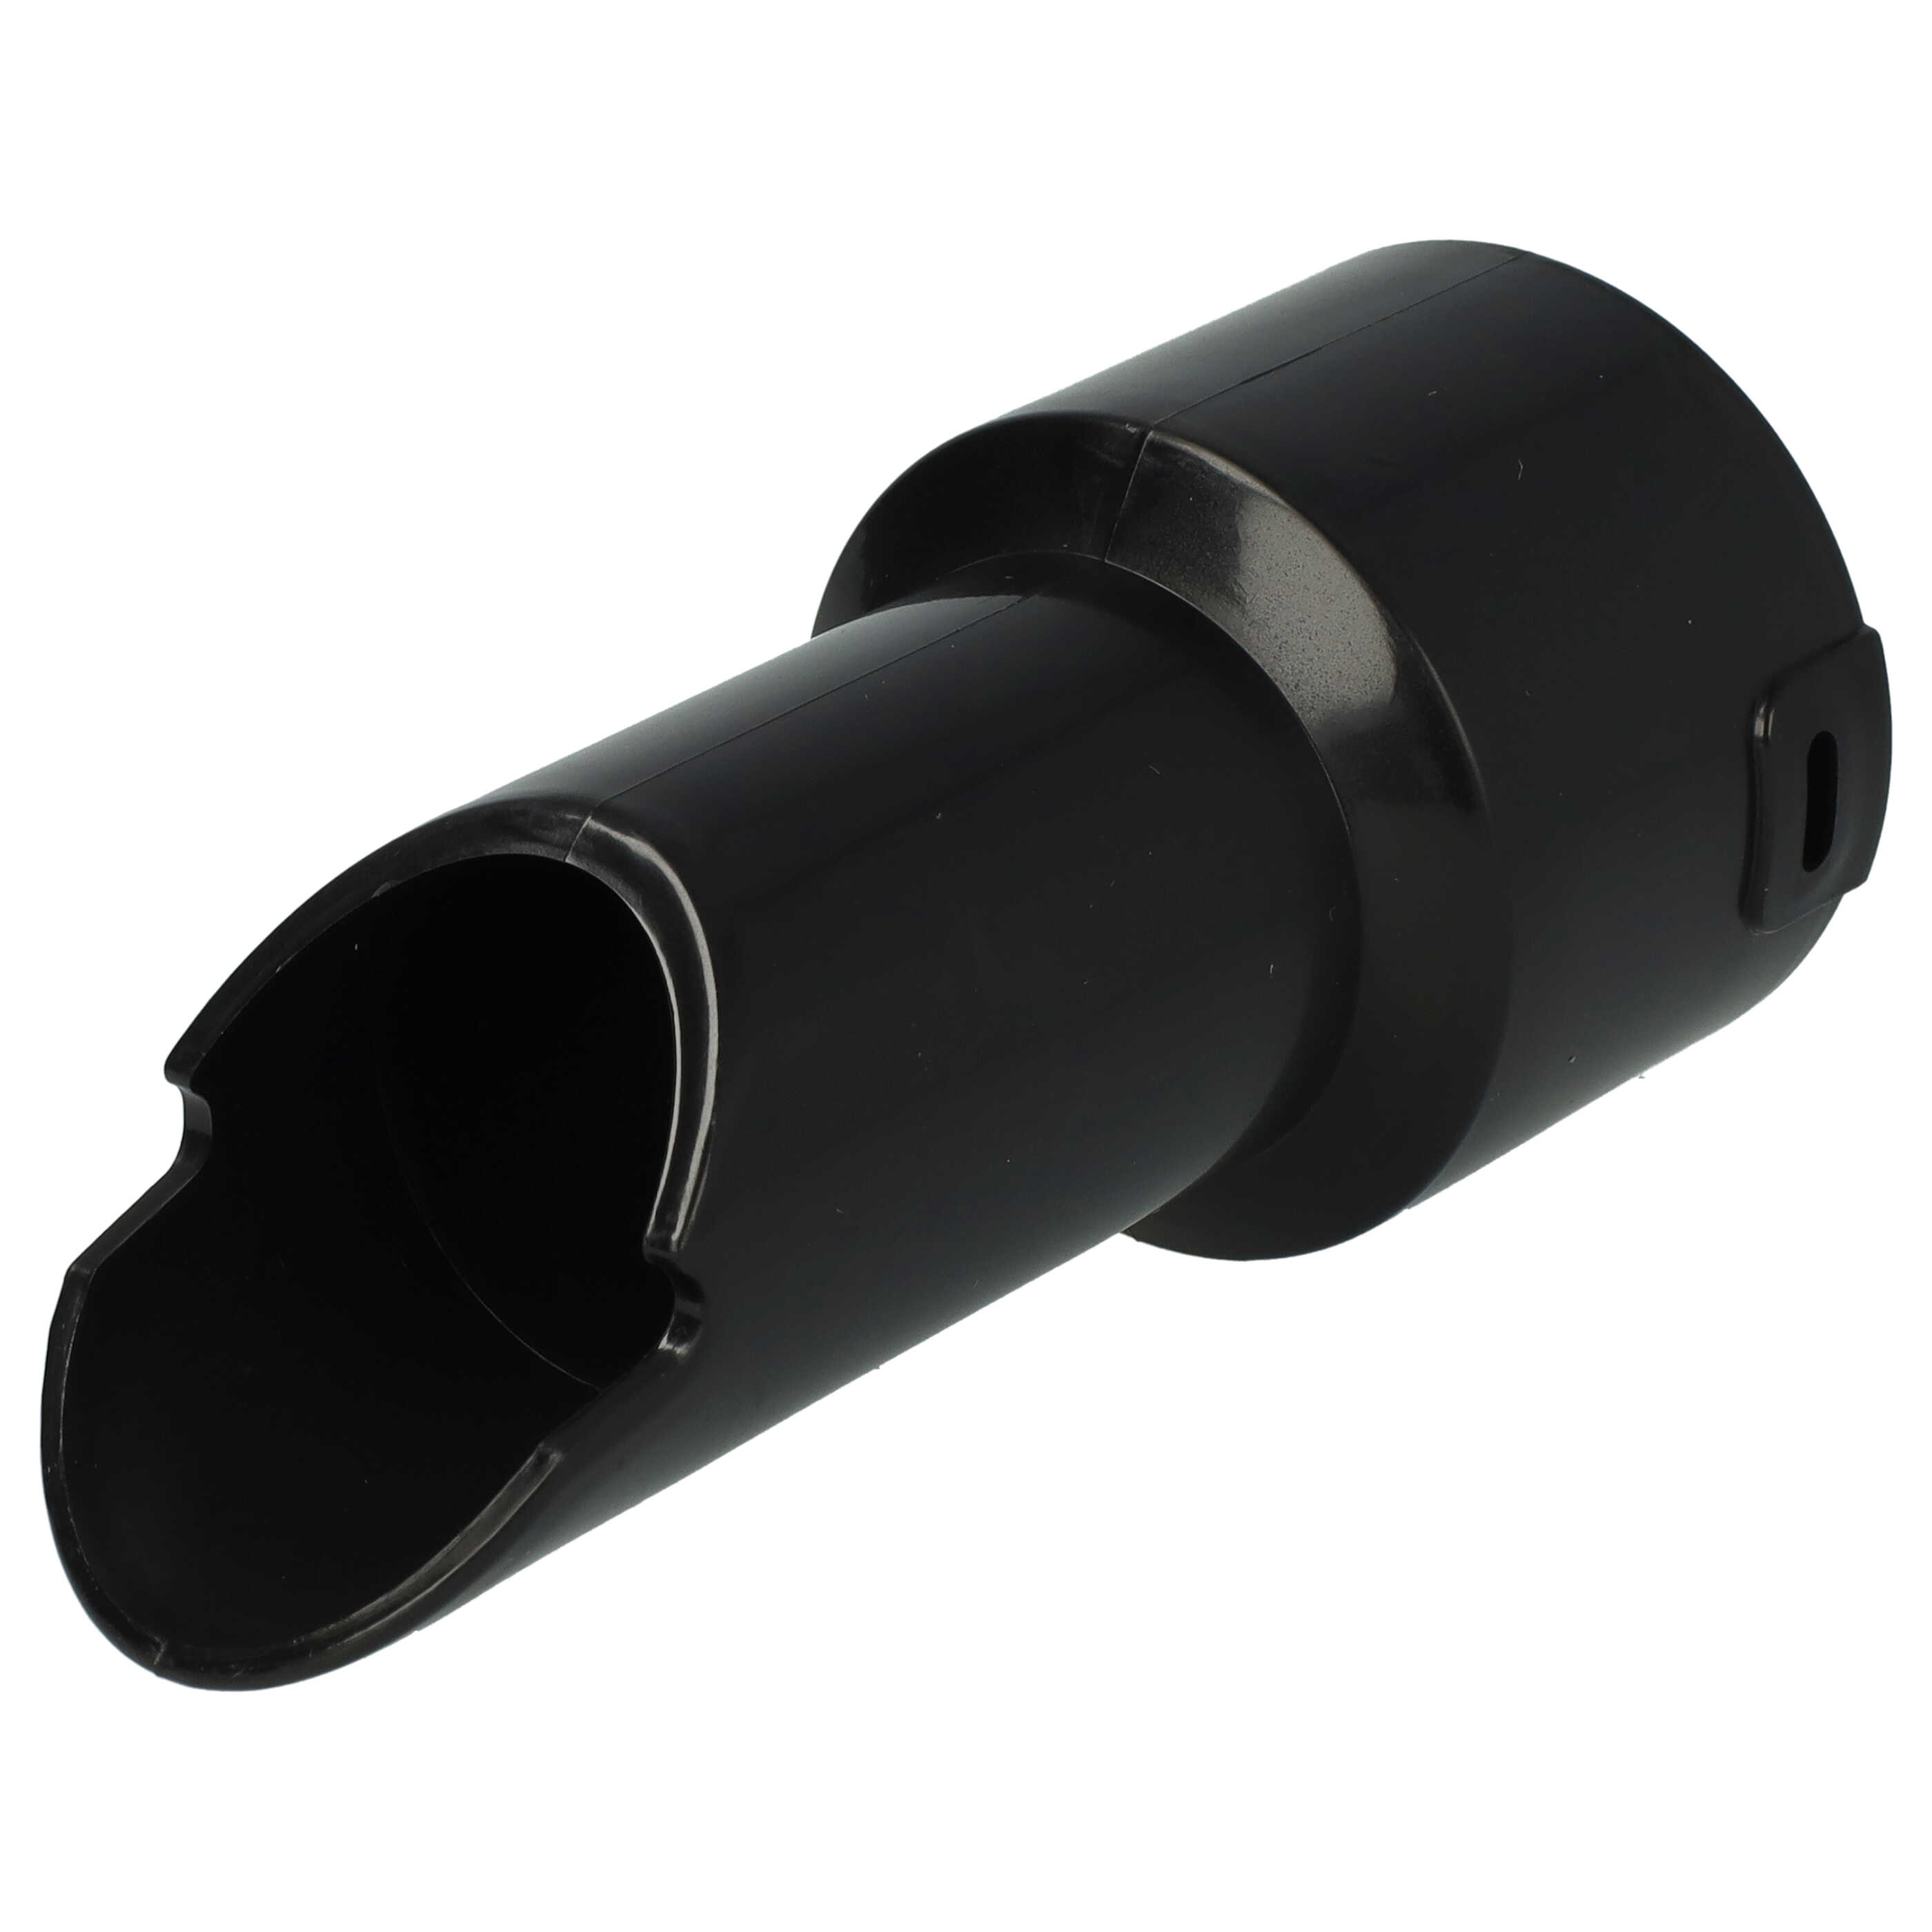 Adattatore per tubo flessibile per NBV190/1 Numatic aspiratori - 32 mm Connettore rotondo, sistema a clic